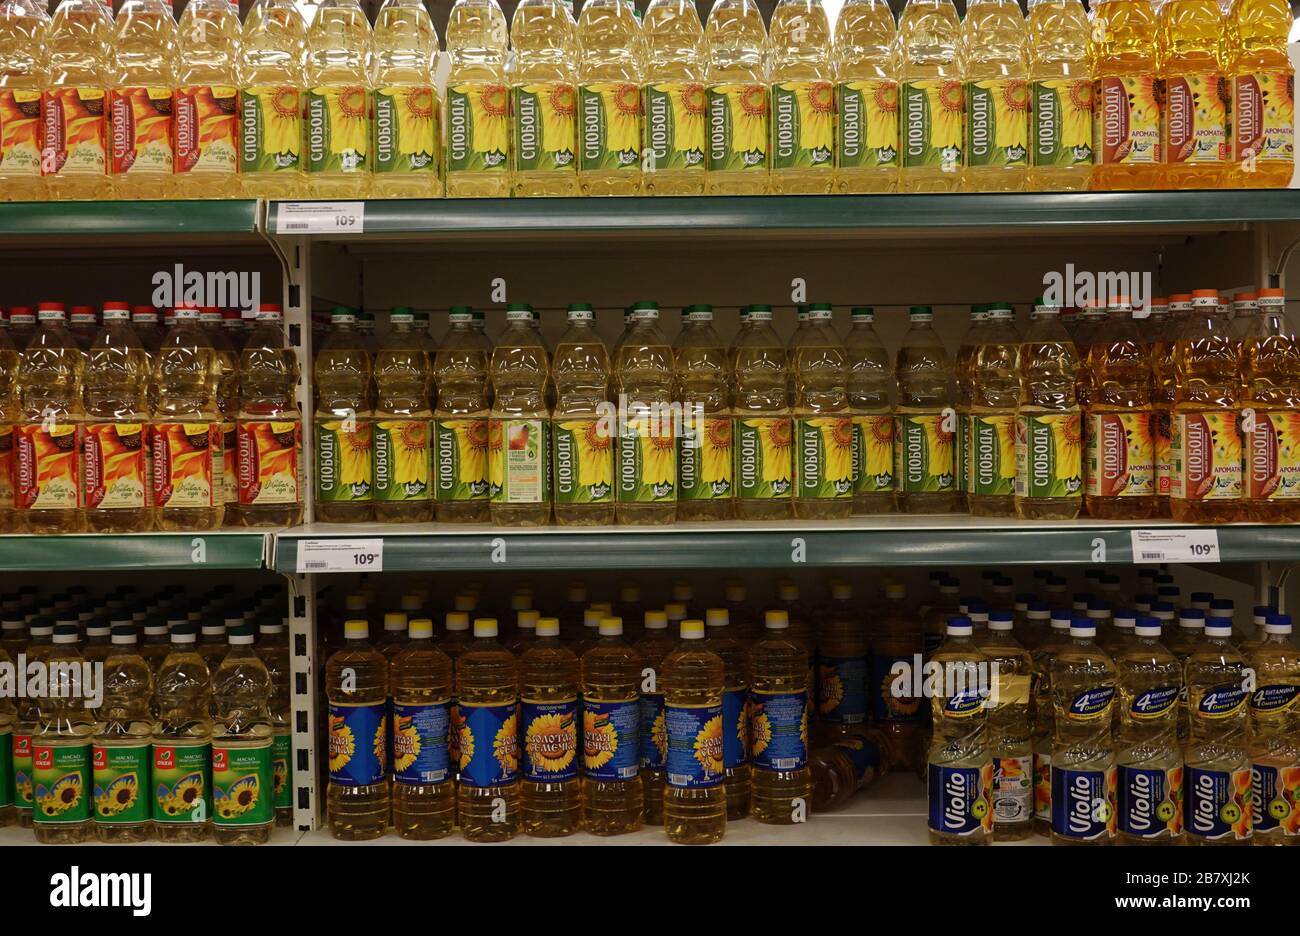 Sonnenblumen-Saatöl im Supermarkt während der COVID-19-Pandemie in Russland, Astrachan Stockfoto